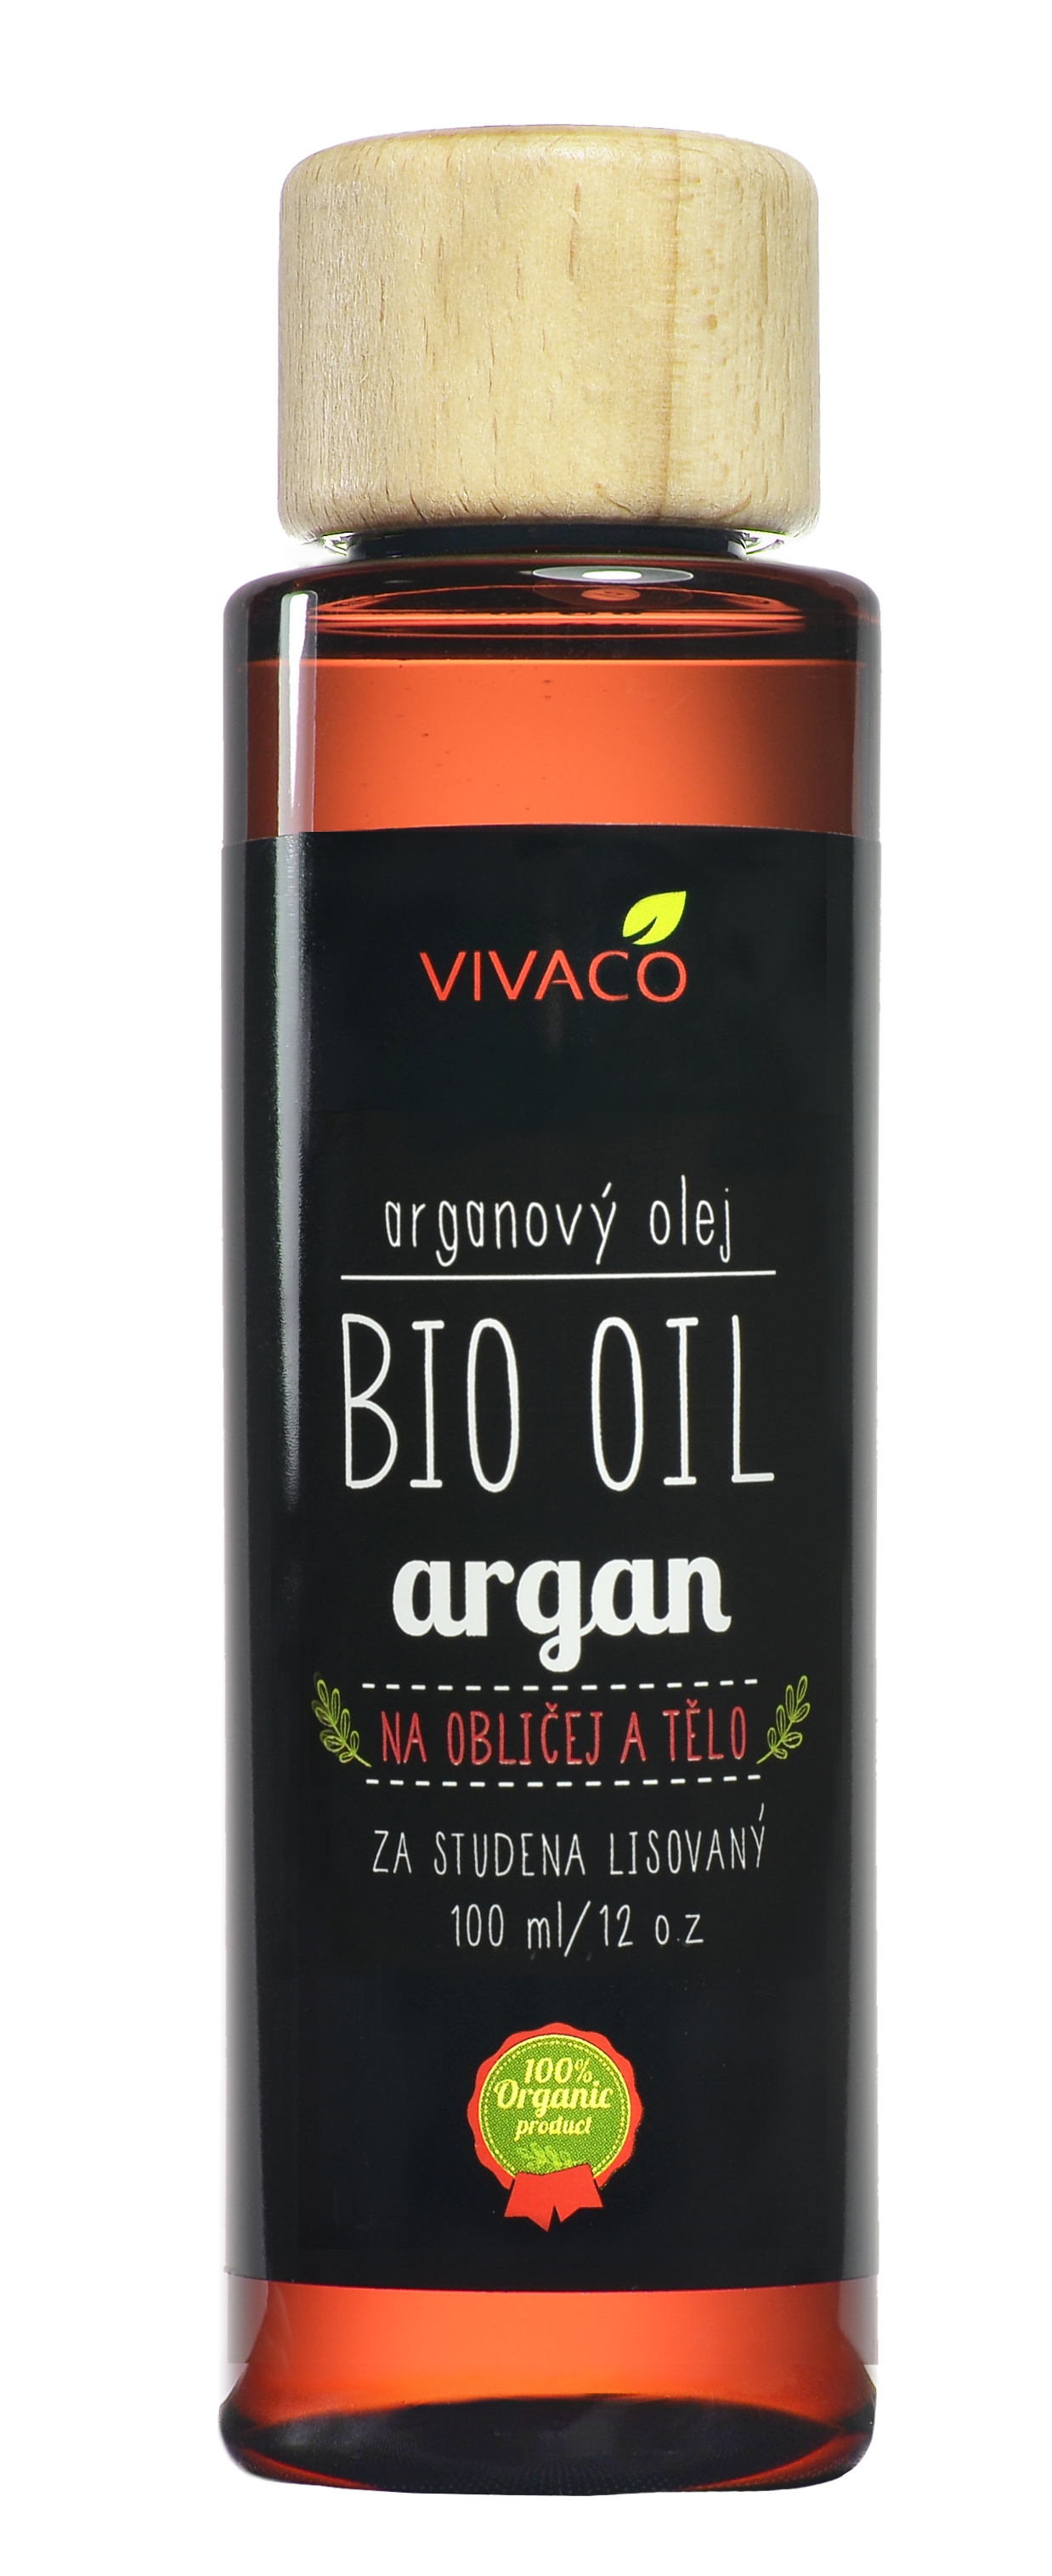 Vivaco Arganový olej na obličej a tělo BIO 100 ml